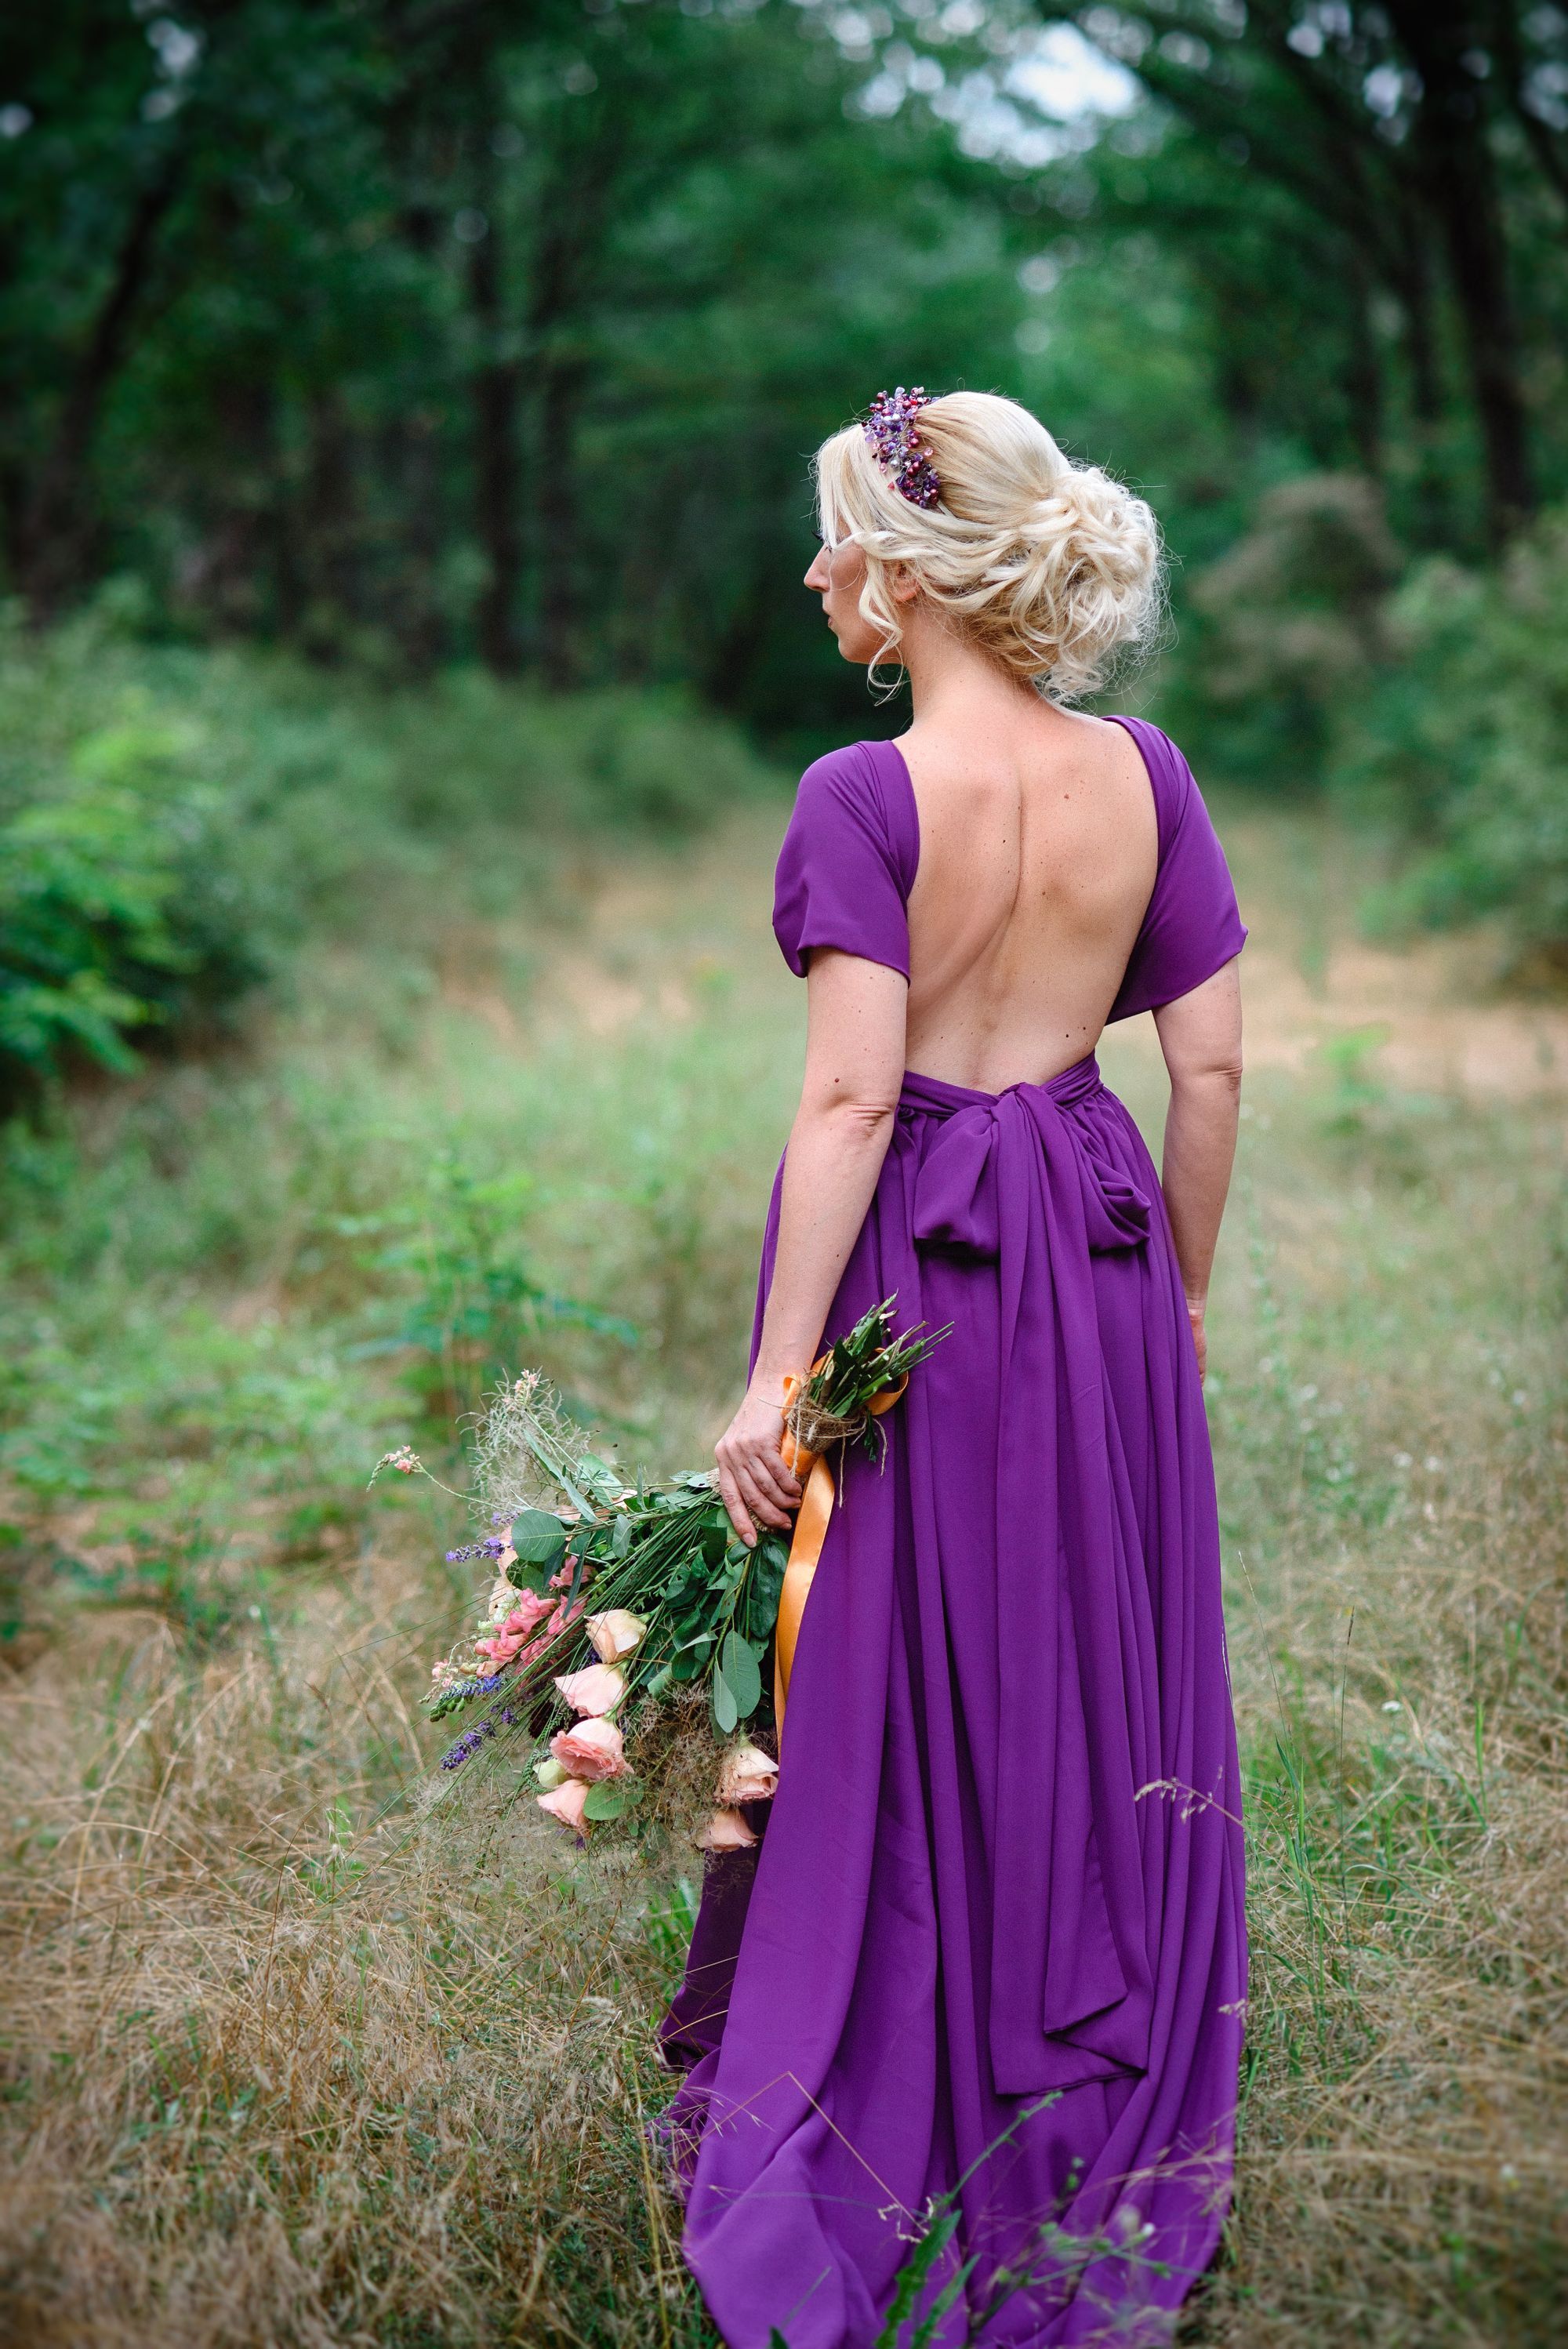 Die Braut trägt ein lilafarbenes Hochzeitskleid.